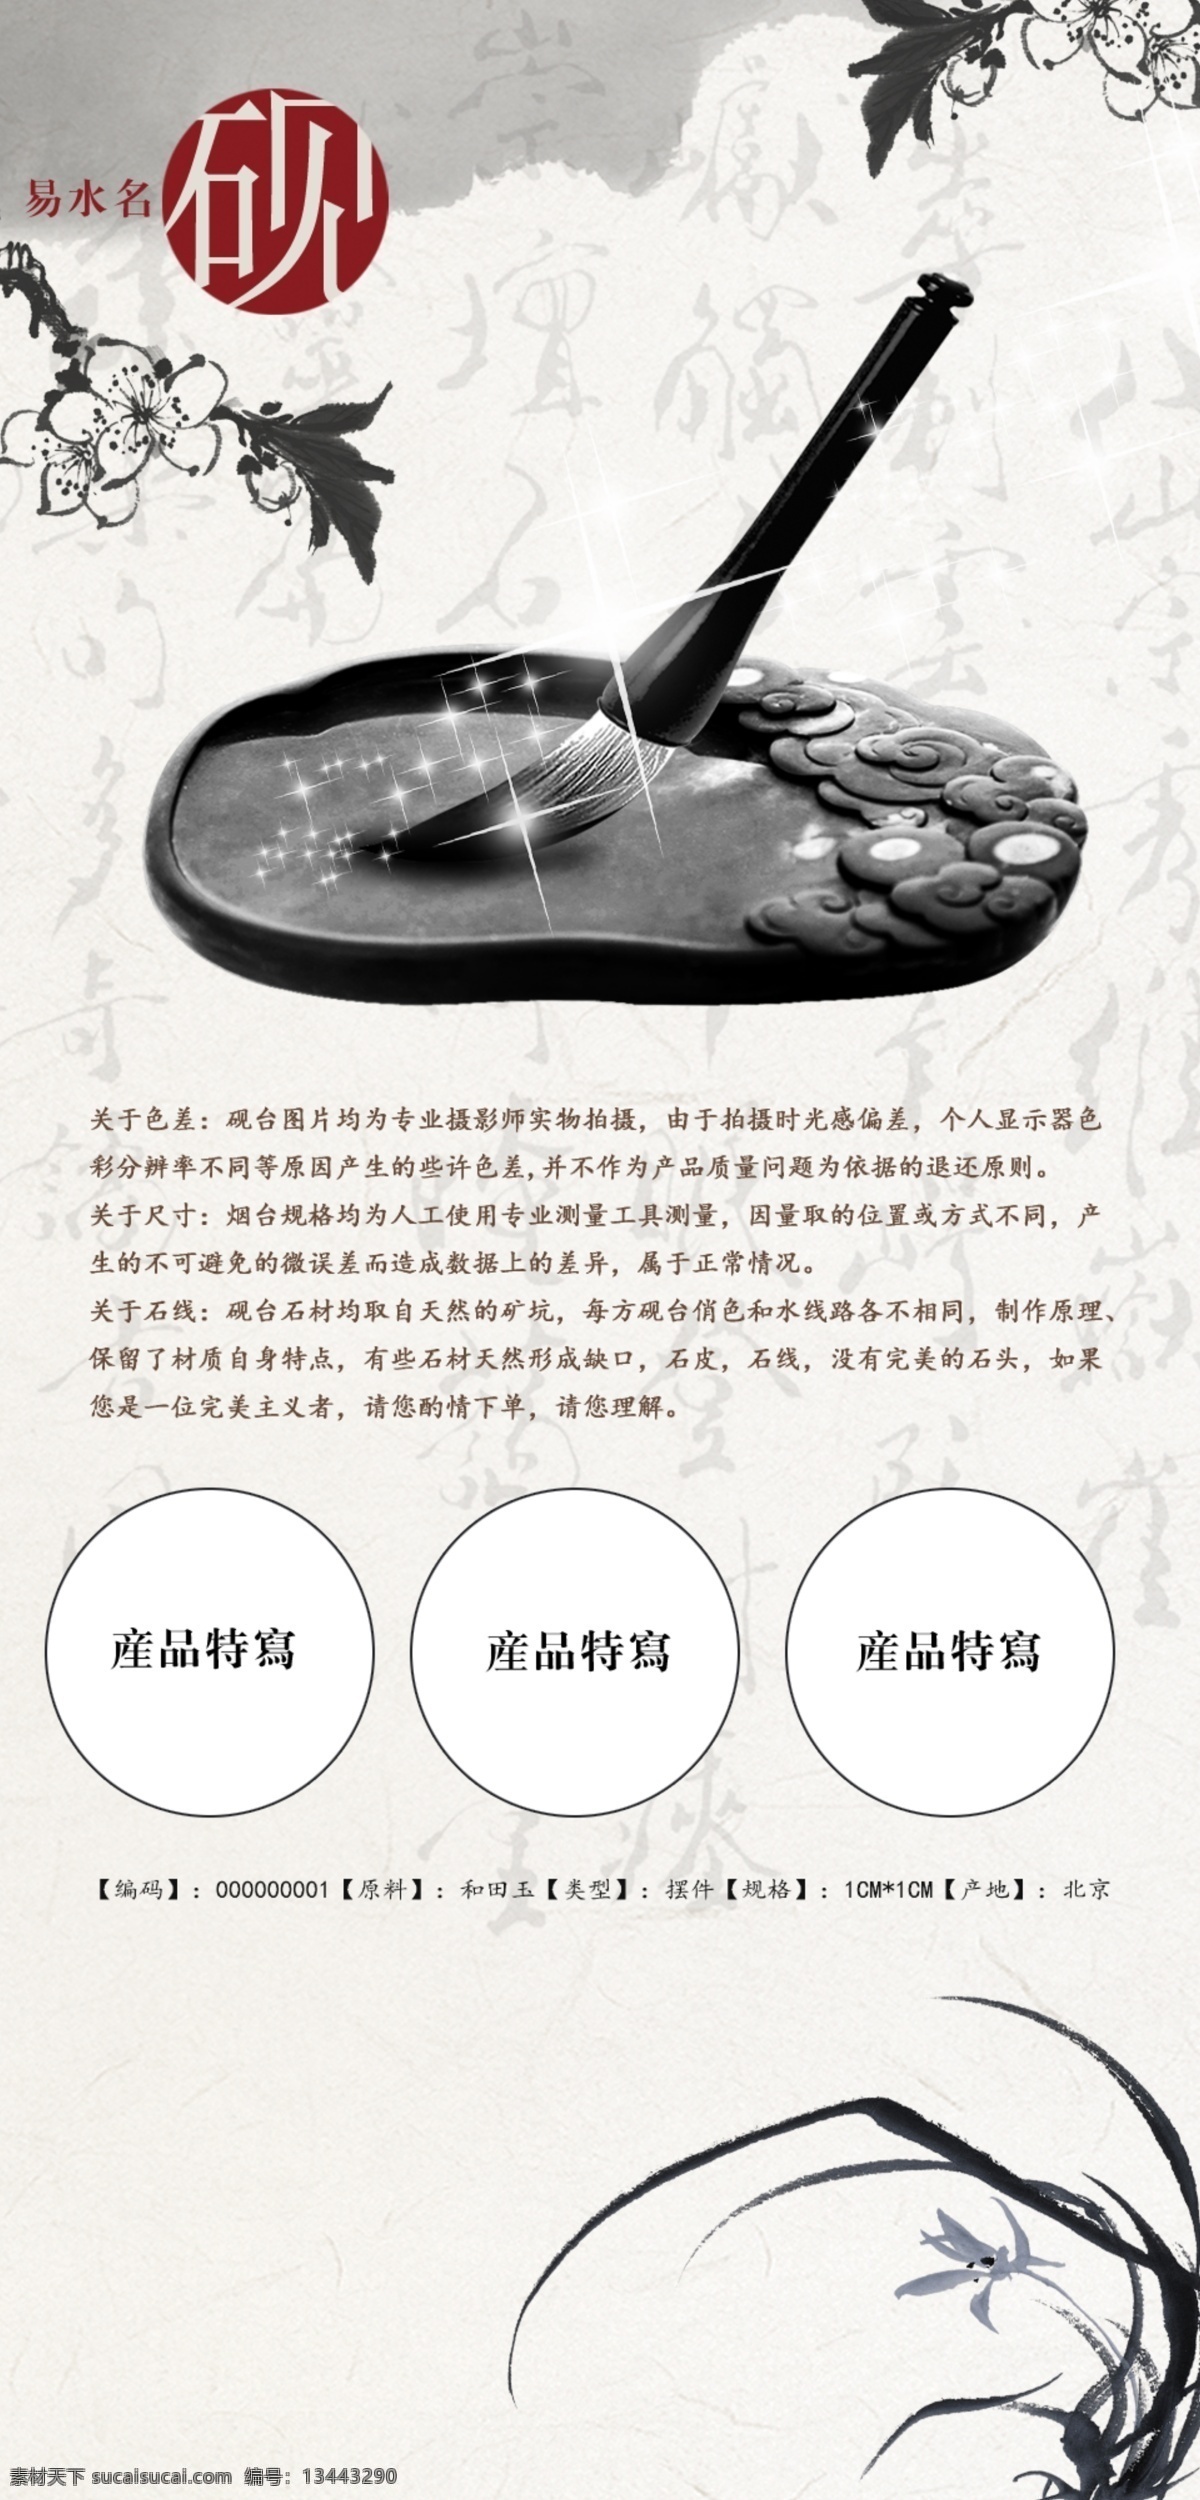 中国 风 石雕 砚台 详情 描述 国风 淘宝素材 淘宝设计 淘宝模板下载 白色